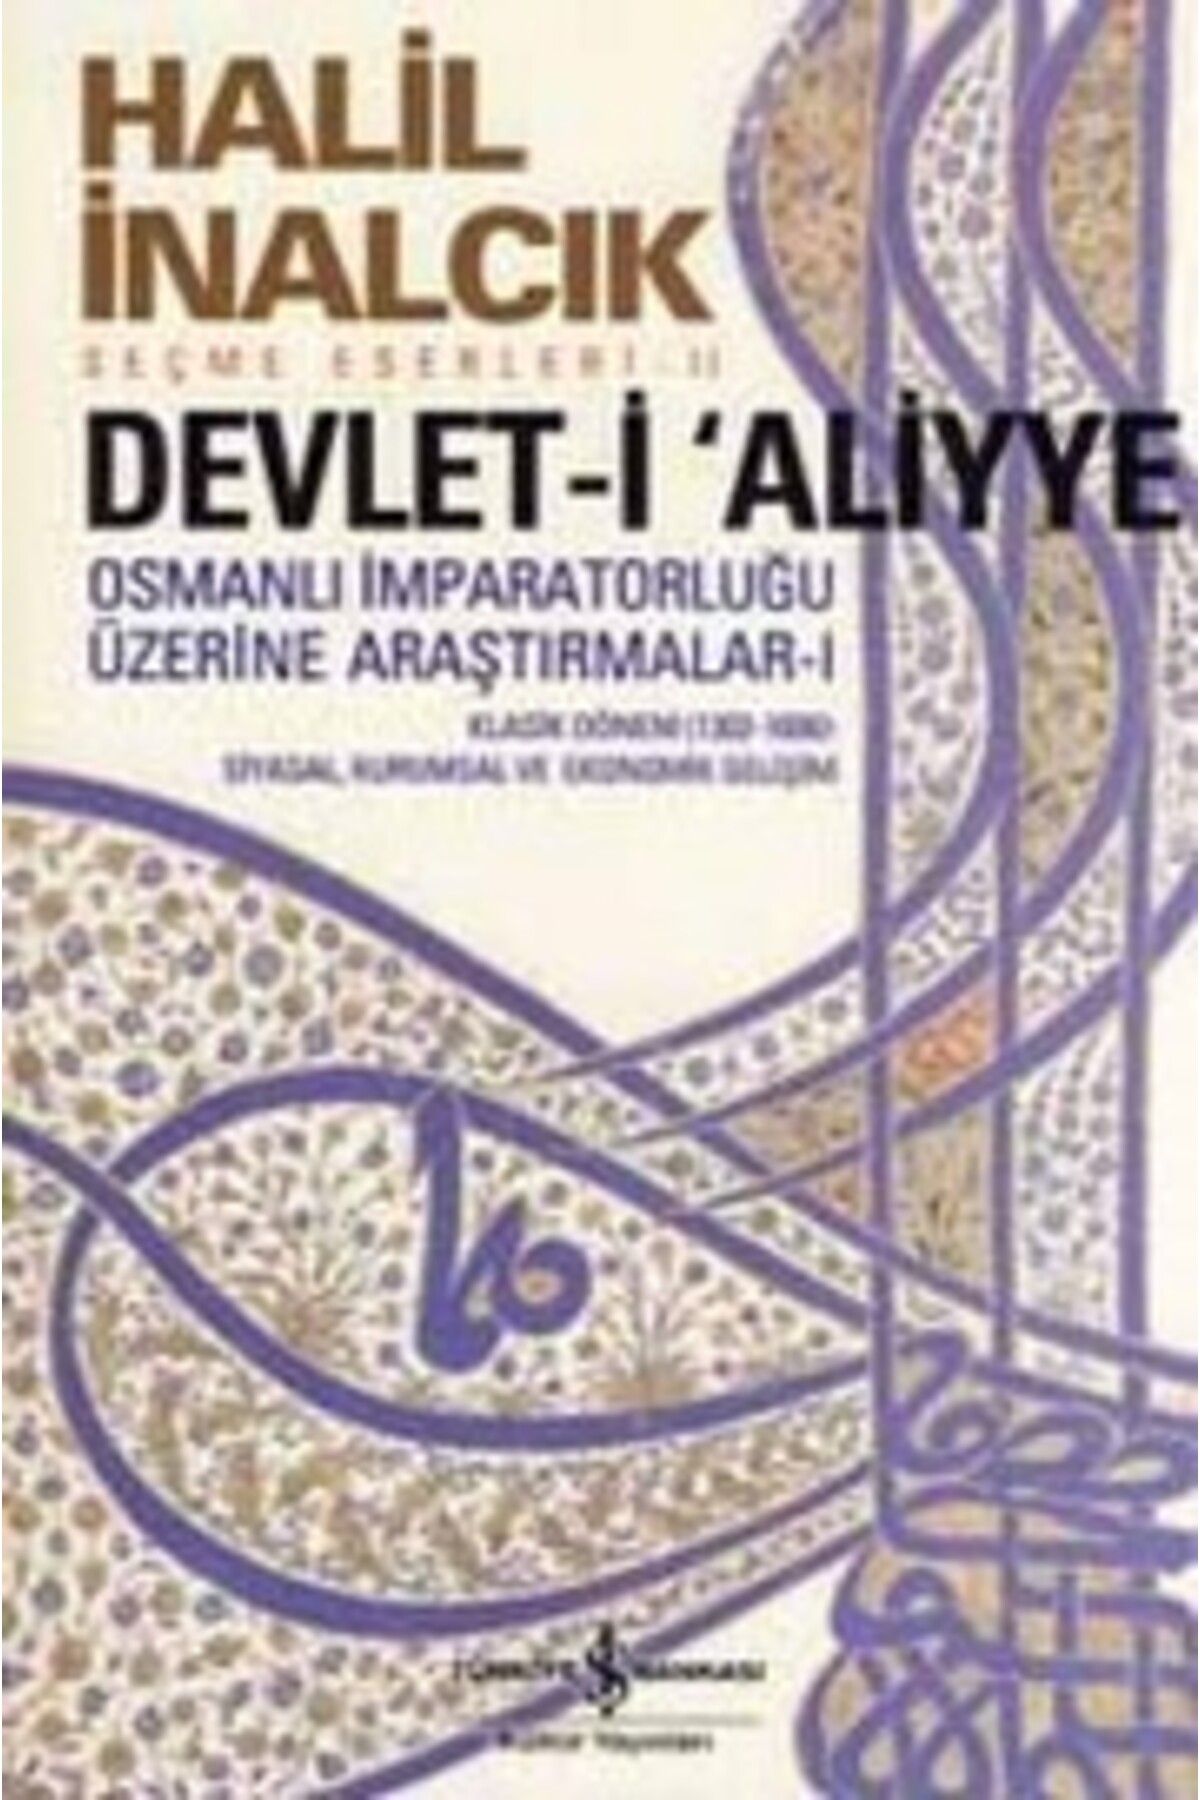 Türkiye İş Bankası Kültür Yayınları Devlet-İ Aliyye; Osmanlı İmparatorluğu Üzerine Araştırmalar - I